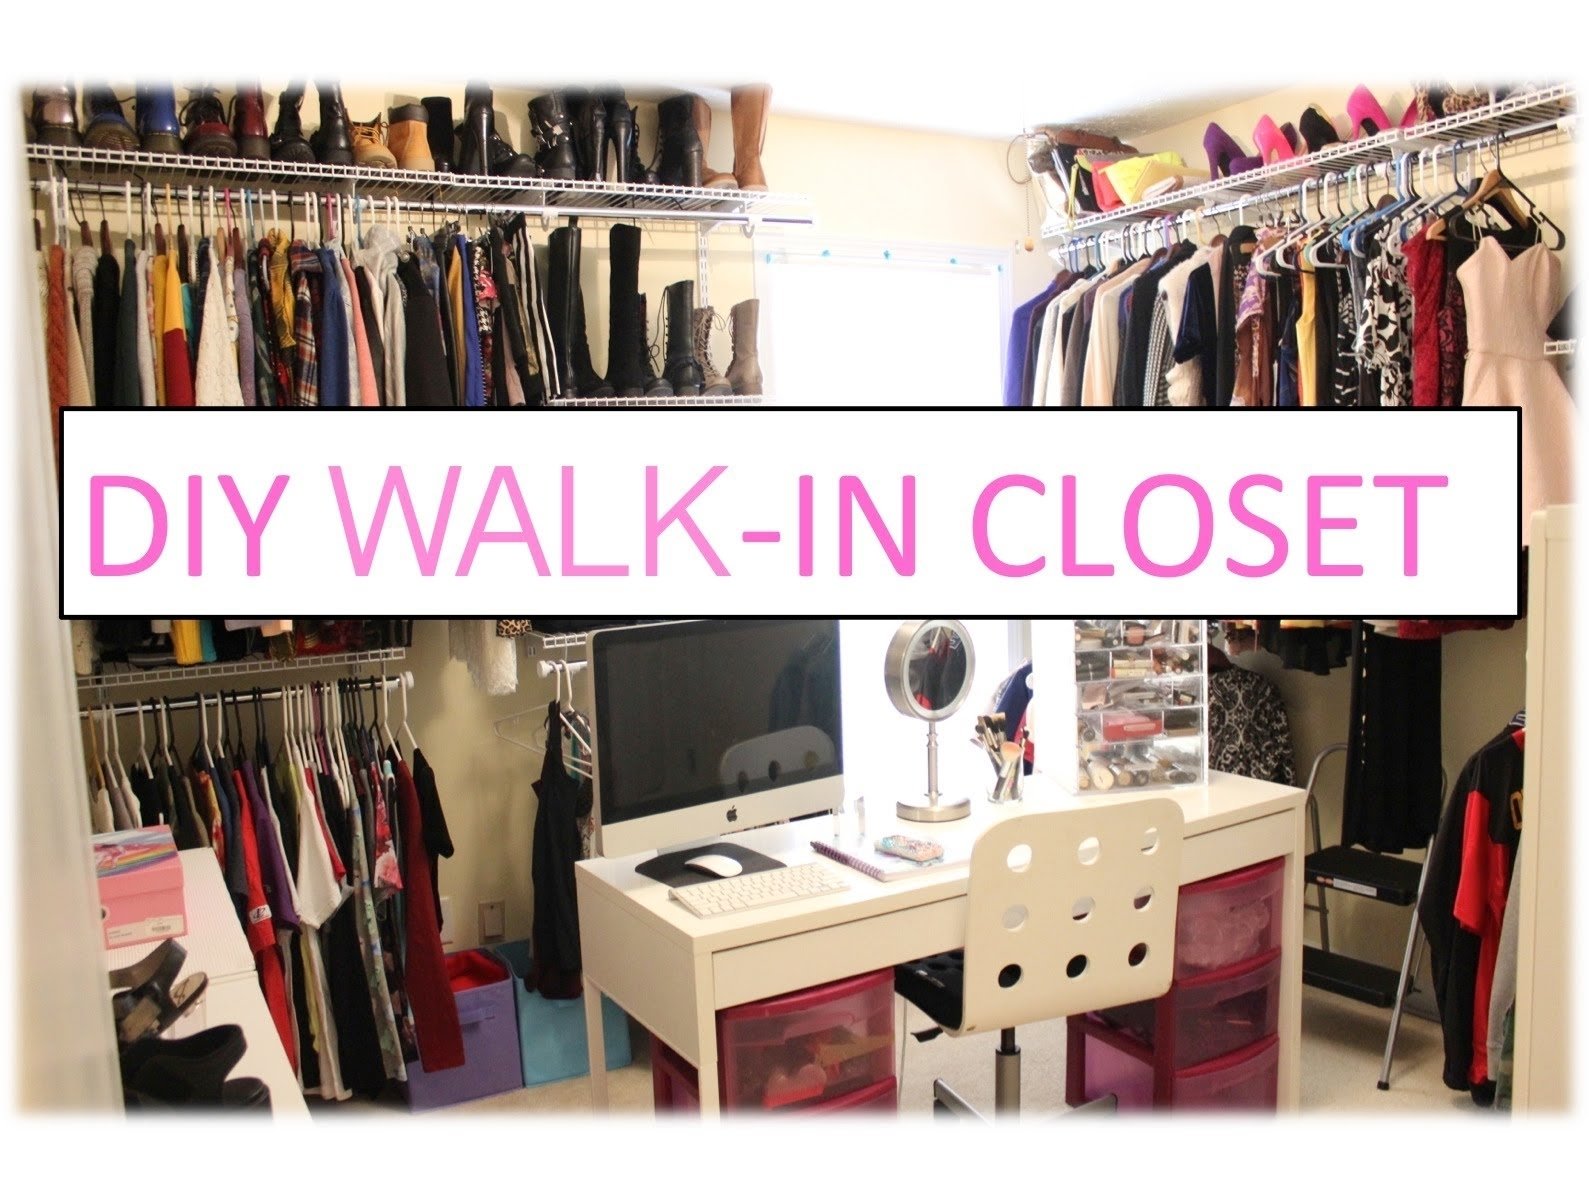 10 Amazing Walk In Closet Ideas Diy diy walk in closet youtube 1 2022